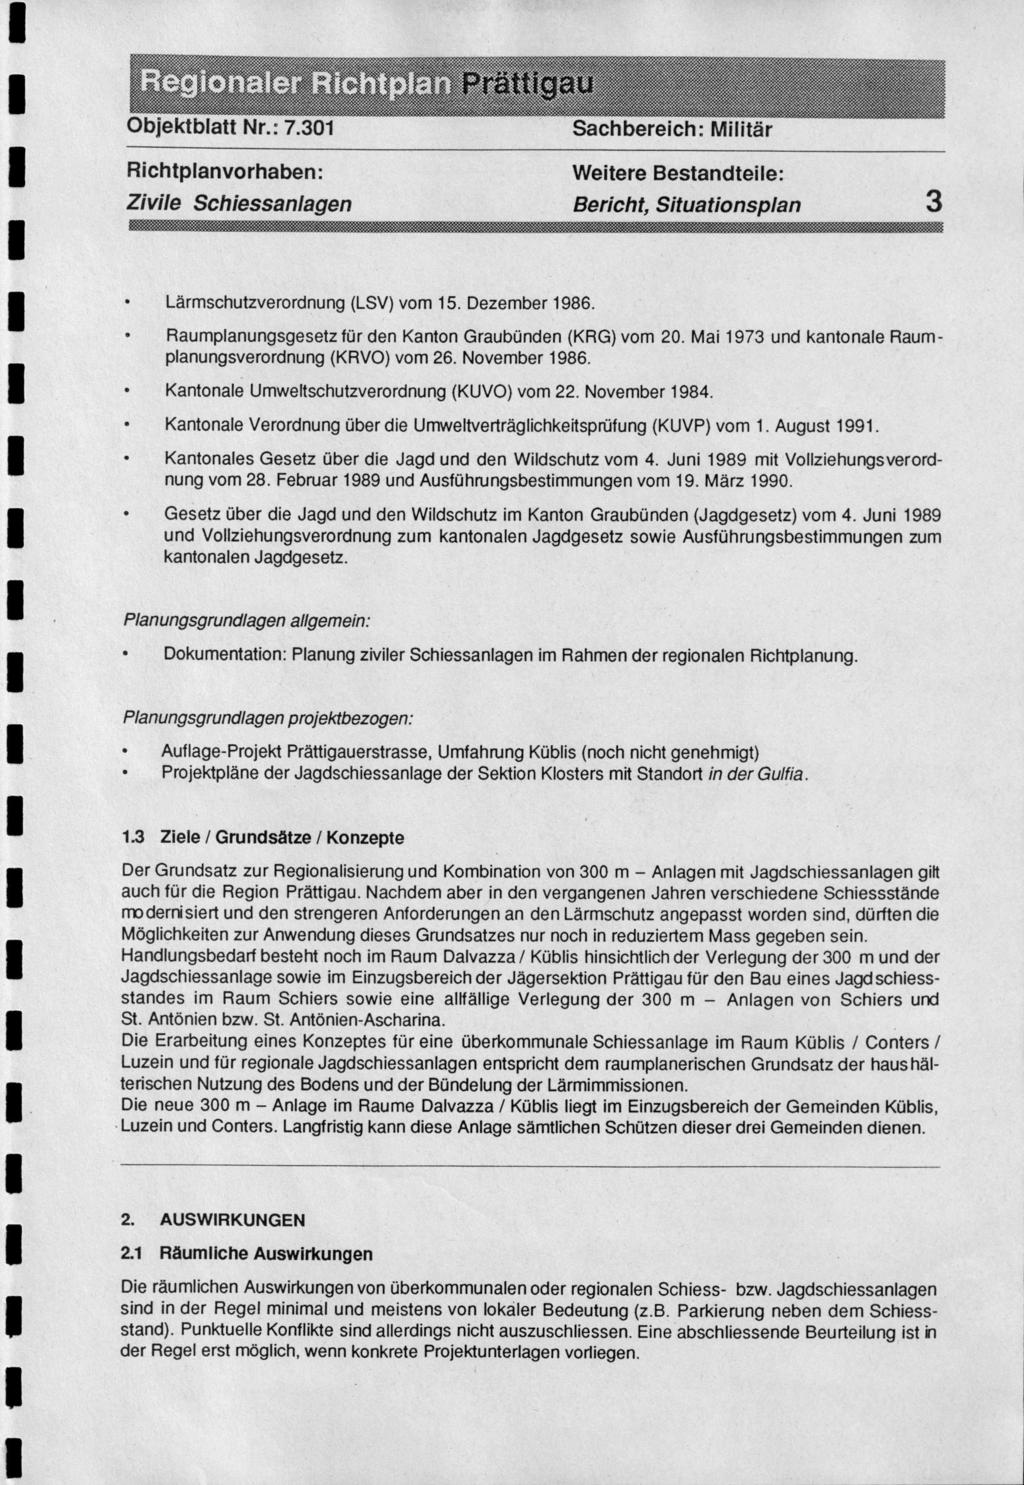 Nen n% Onneem'sztMeteegf".V.em"'""""""'e."'" Zivile Schiessanlagen Bericht, Situationsplan 3 Lärmschutzverordnung (LSV) vom 15. Dezember 1986.